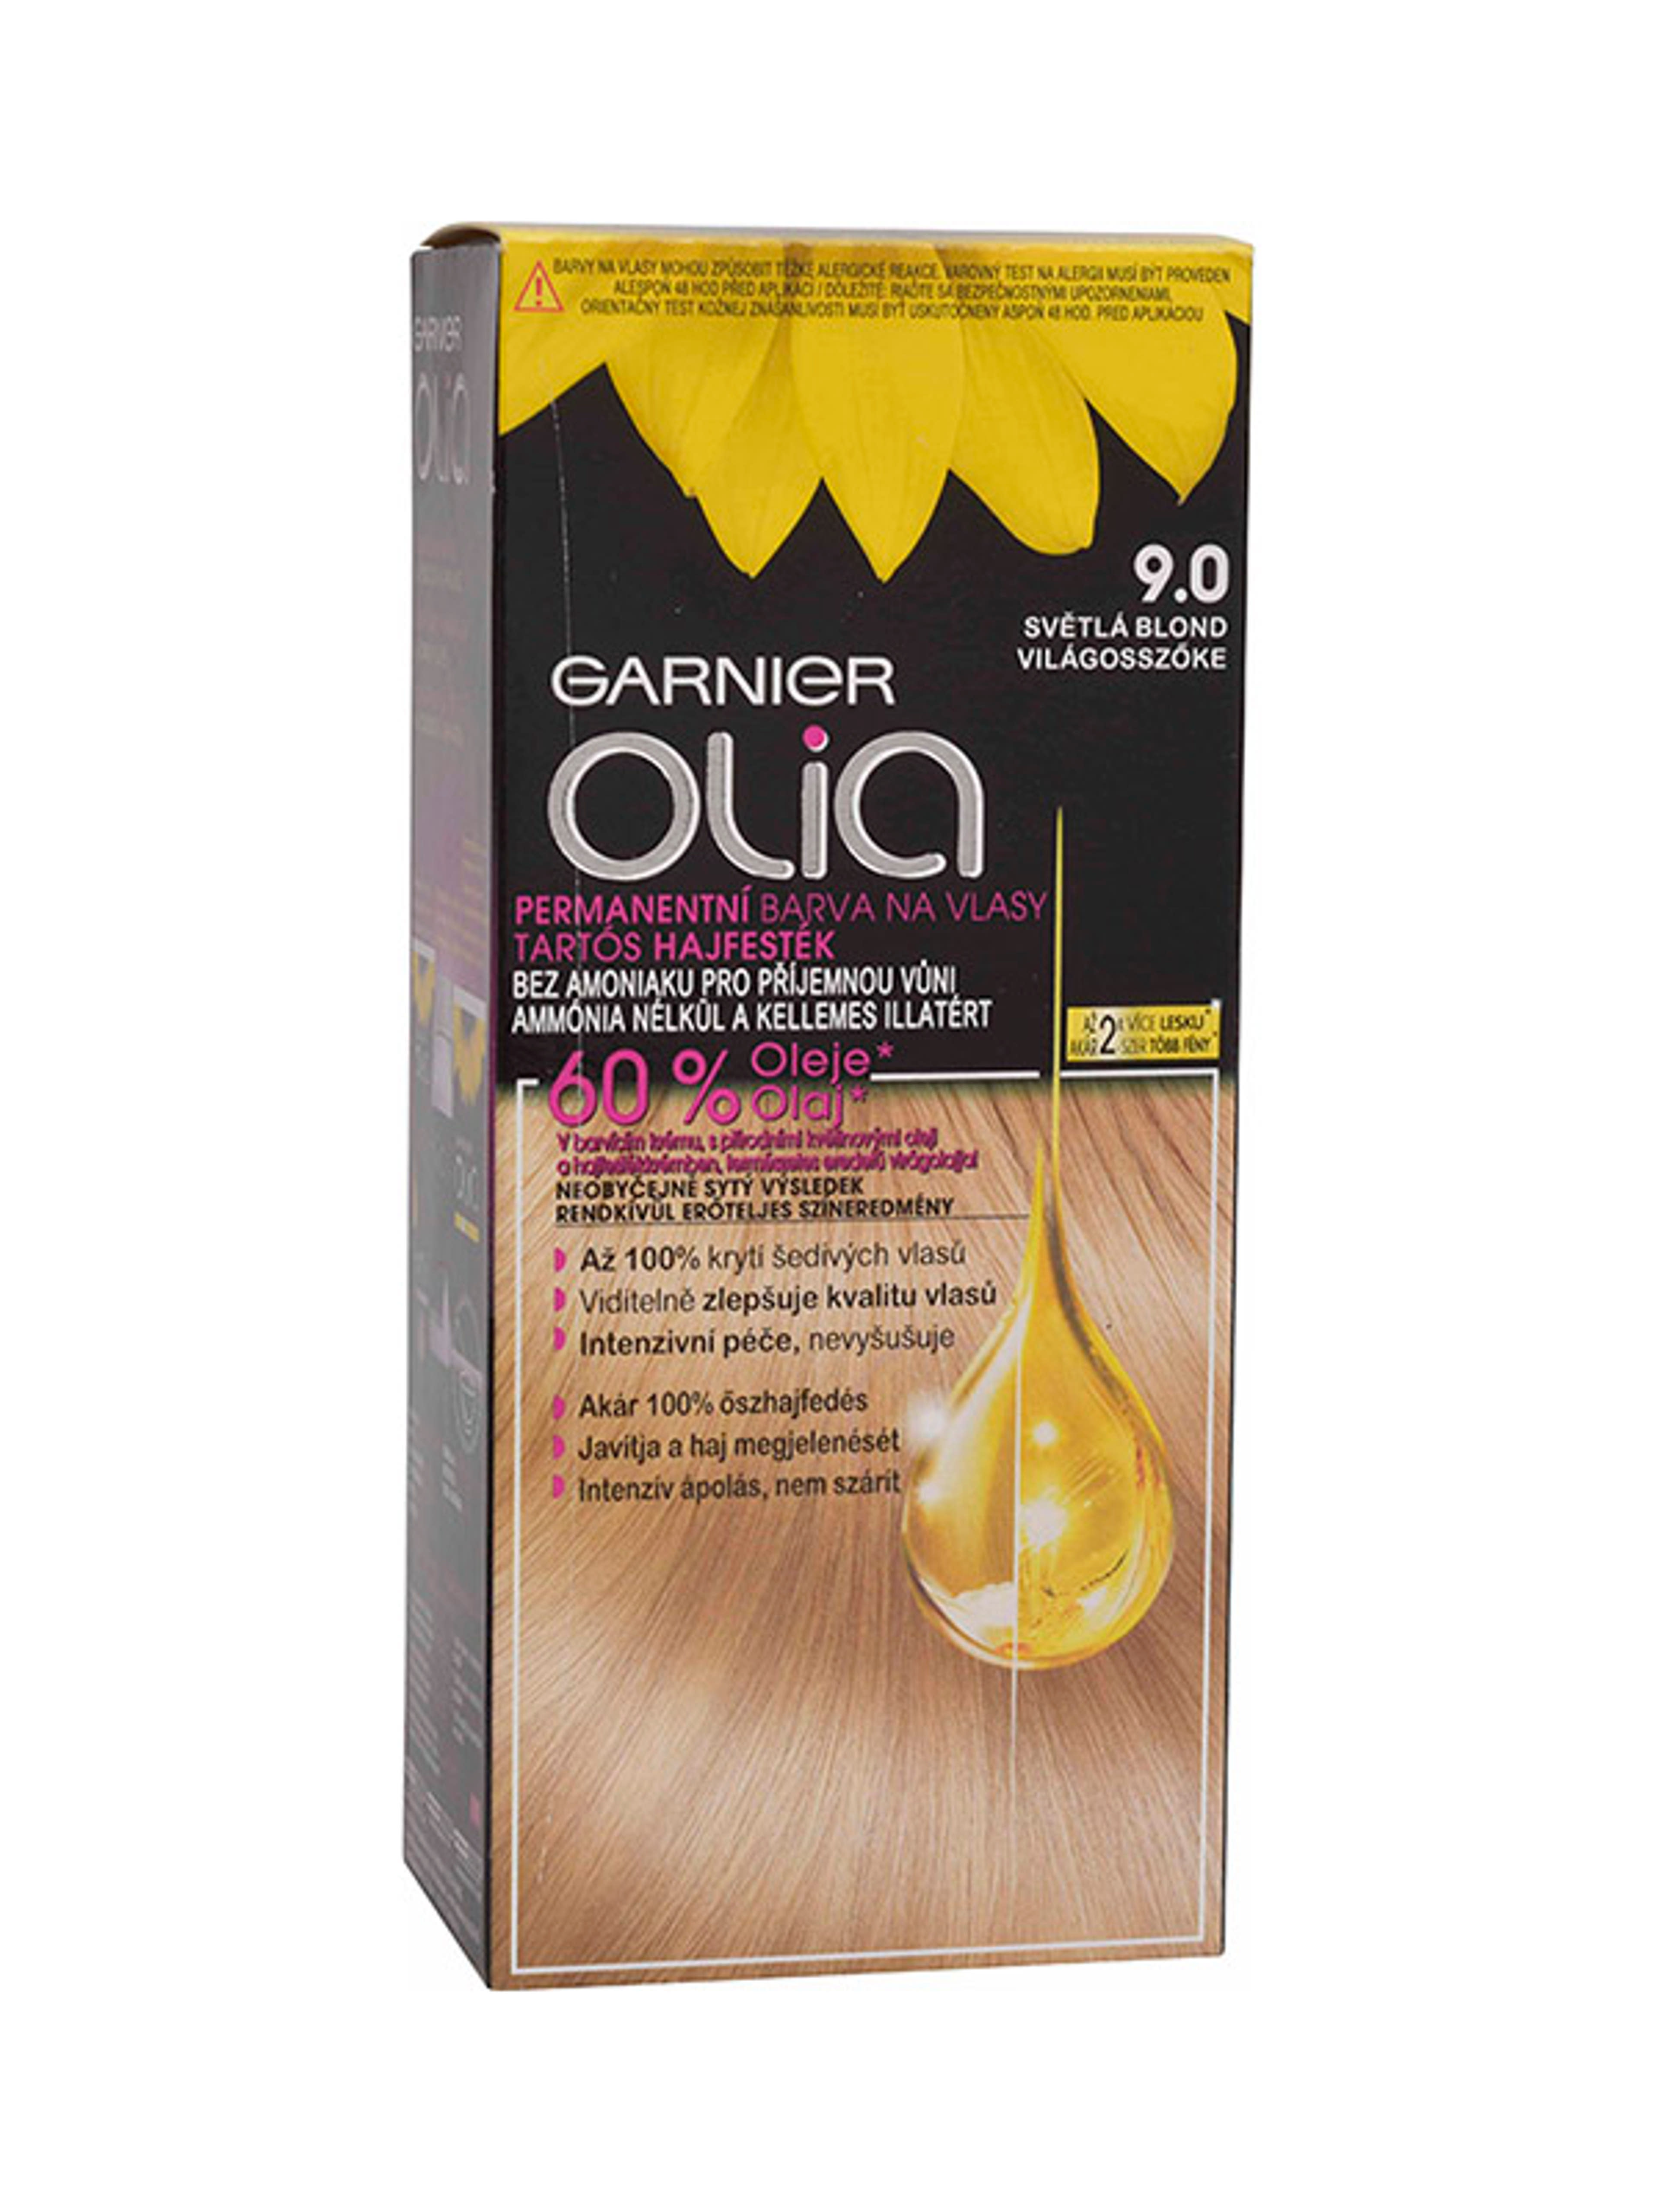 Garnier Olia tartós hajfesték 9.0 Világosszőke - 1 db-1